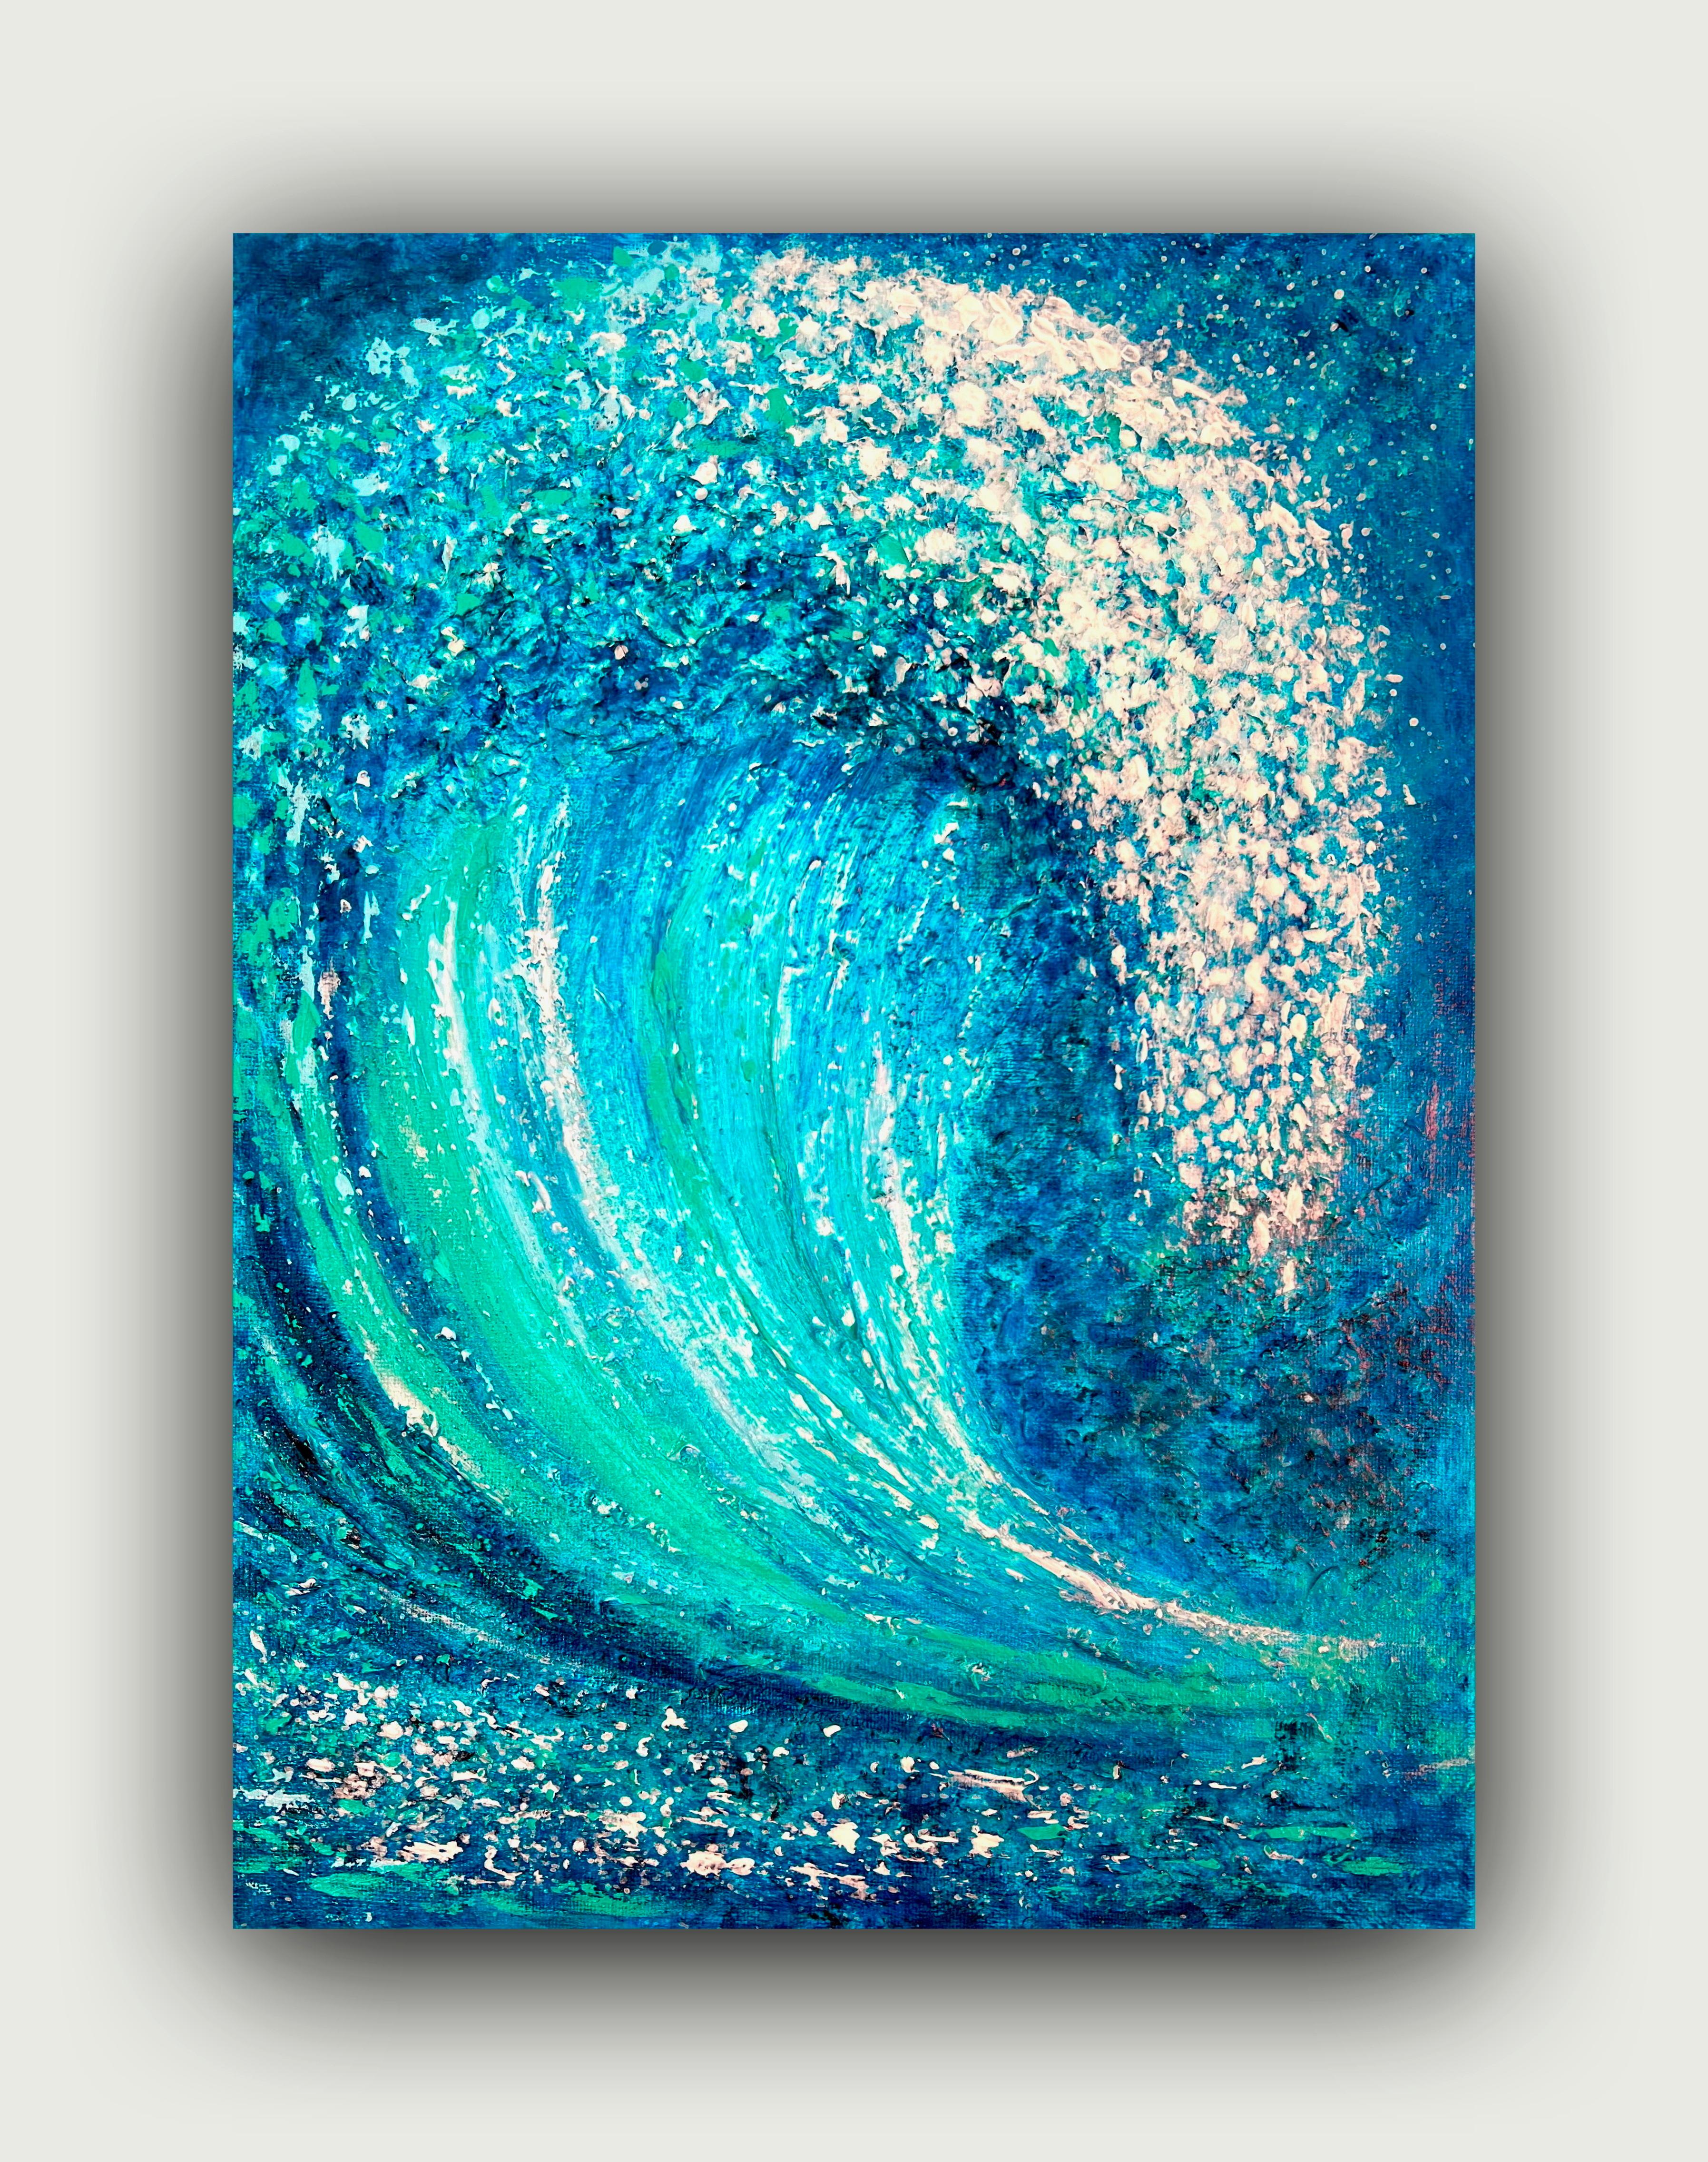  énergie de la mer Peinture semi-abstraite d'expressionnisme intérieur, 40 x 30 cm.